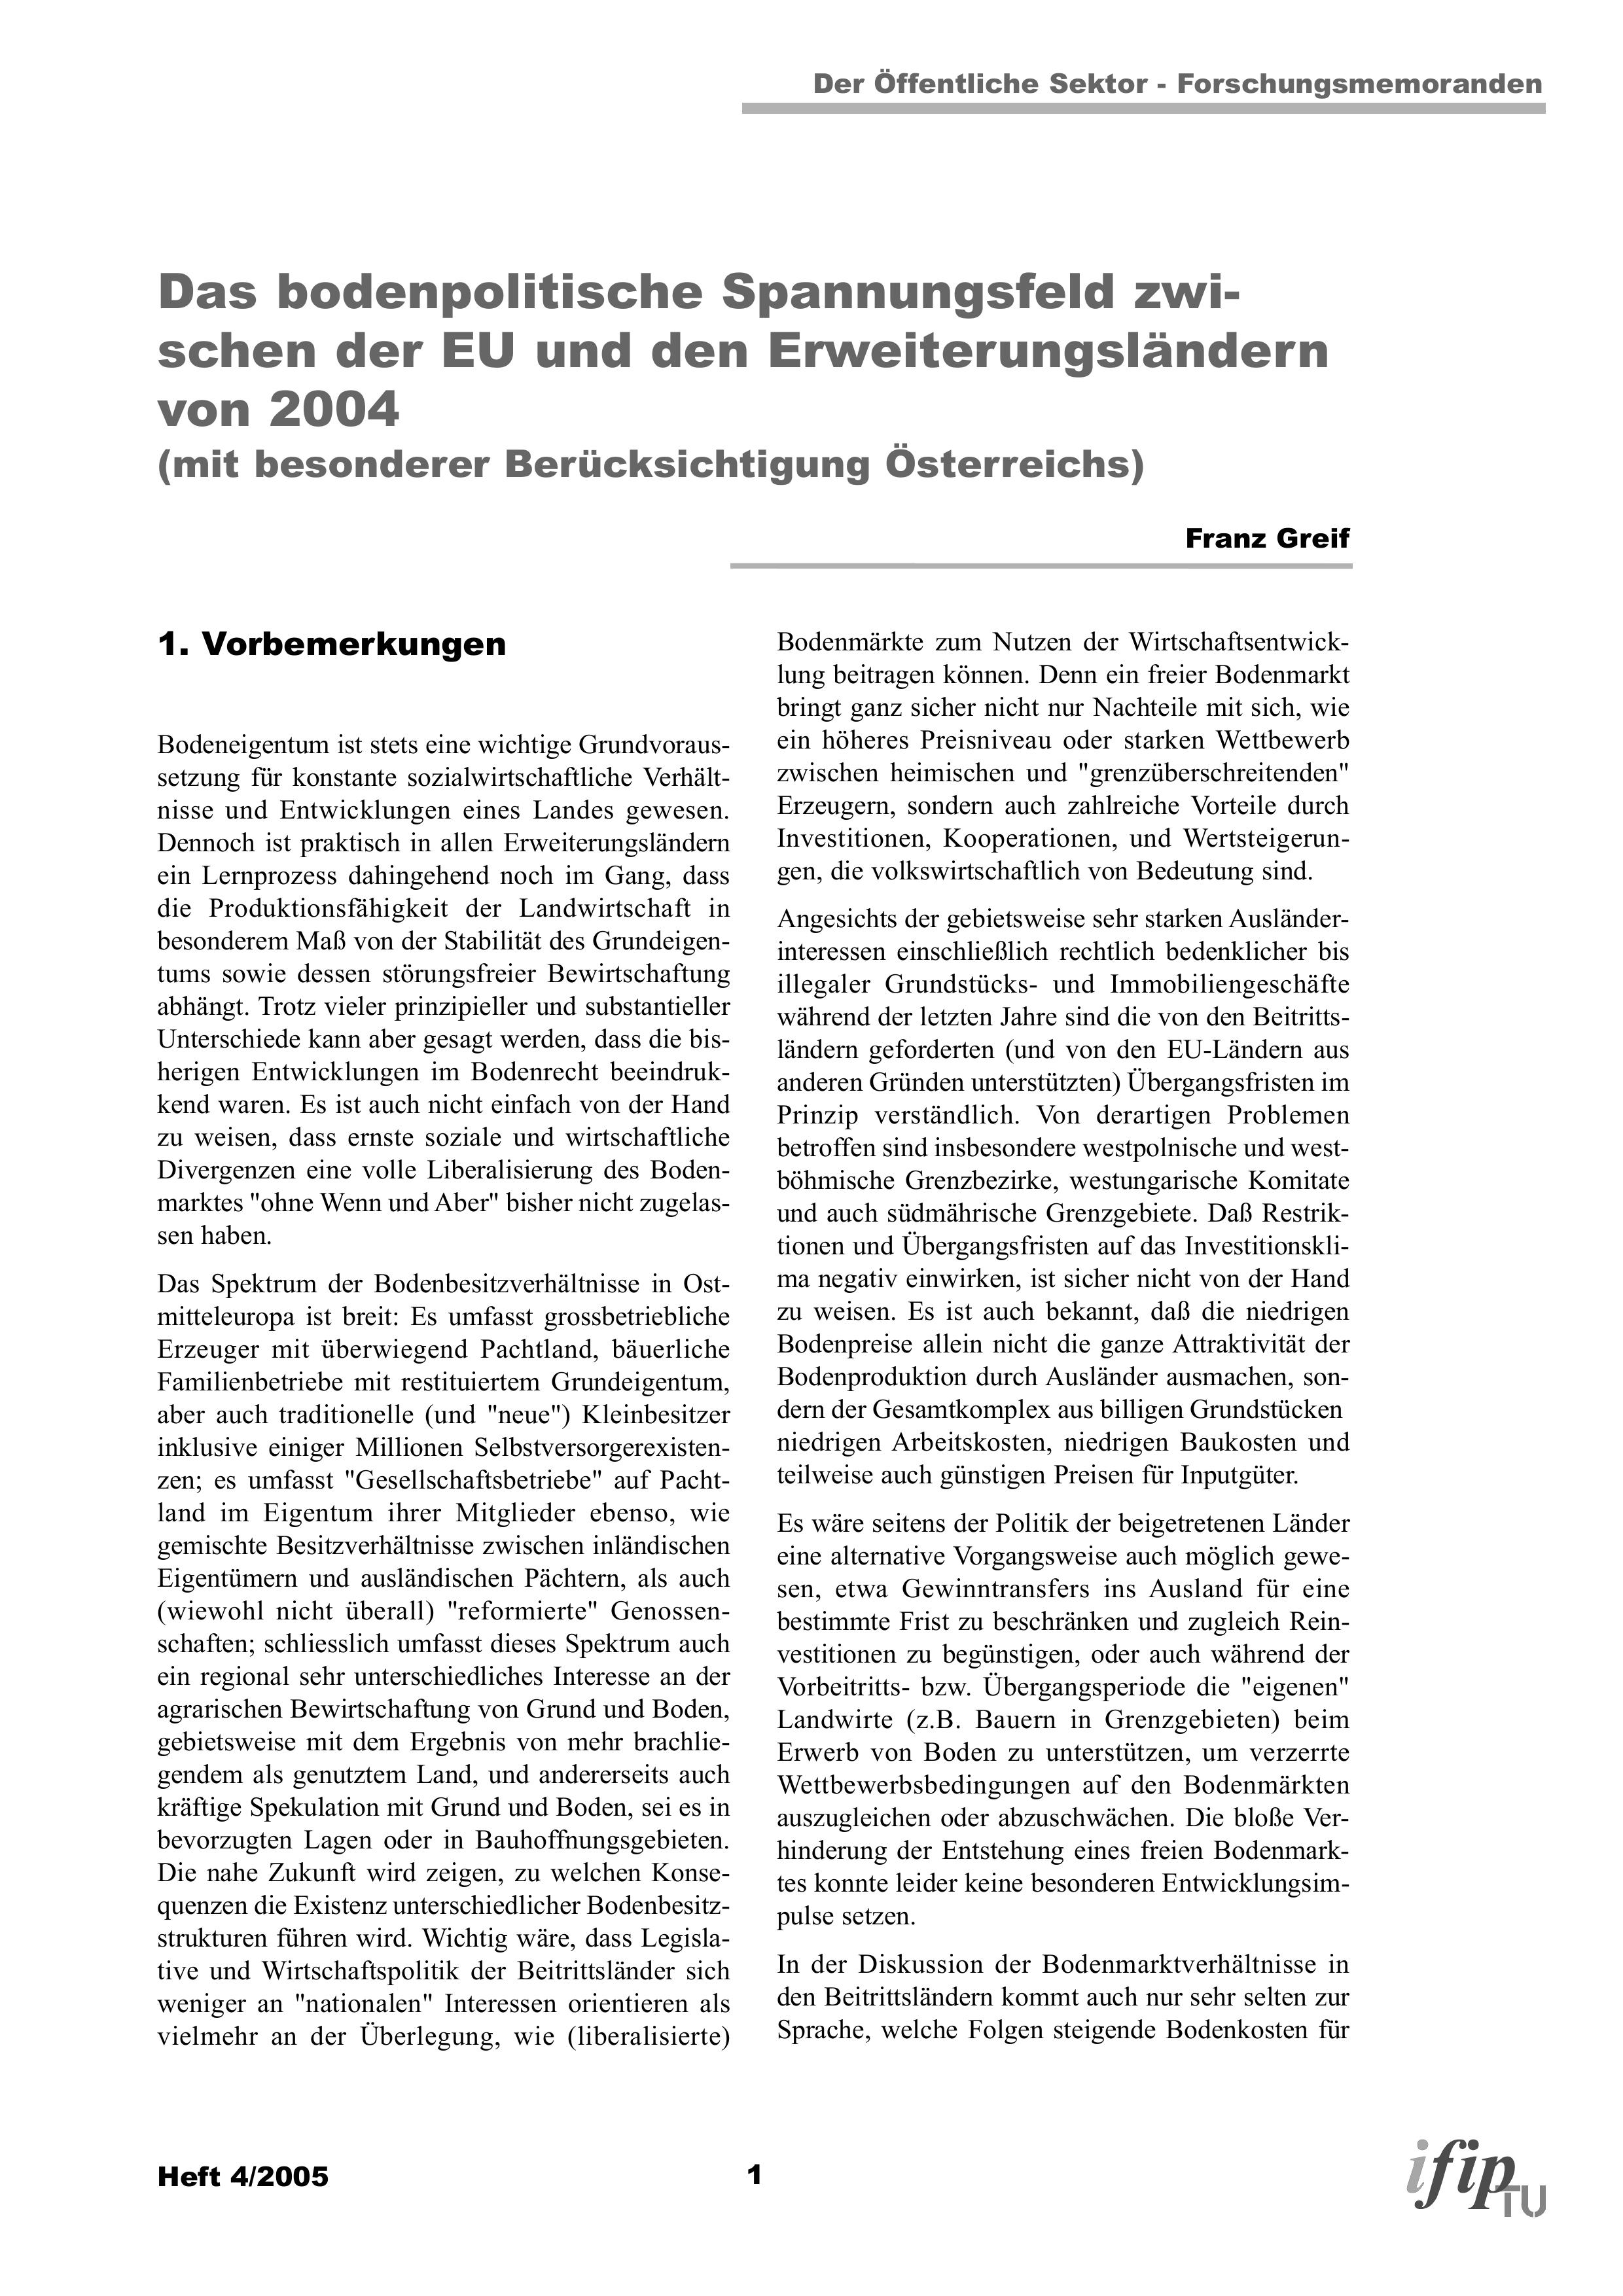 Das bodenpolitische Spannungsfeld zwischen der EU und den Erweiterungsländern von 2004